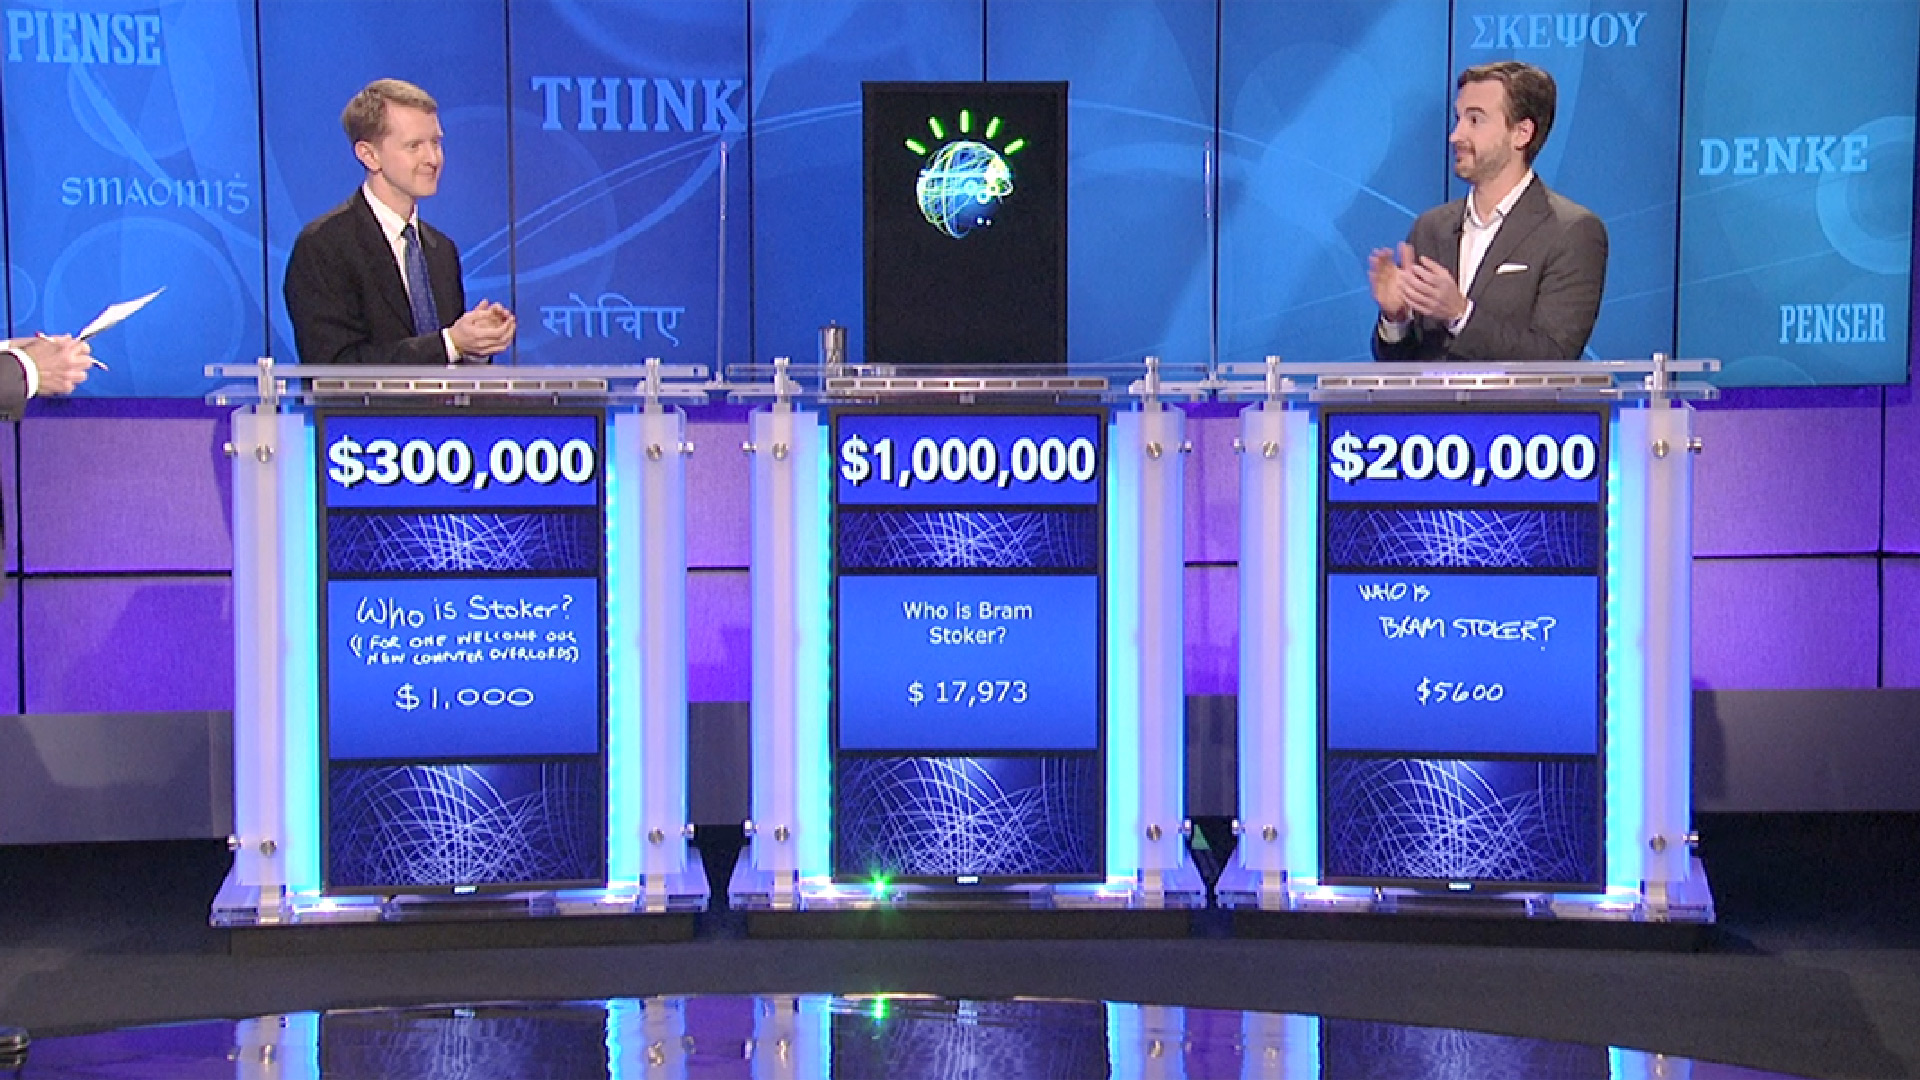 O ibm watson venceu dois humanos no jogo de perguntas jeopardy, demonstrando as incríveis capacidades de processamento e aprendizado de máquina do sistema.